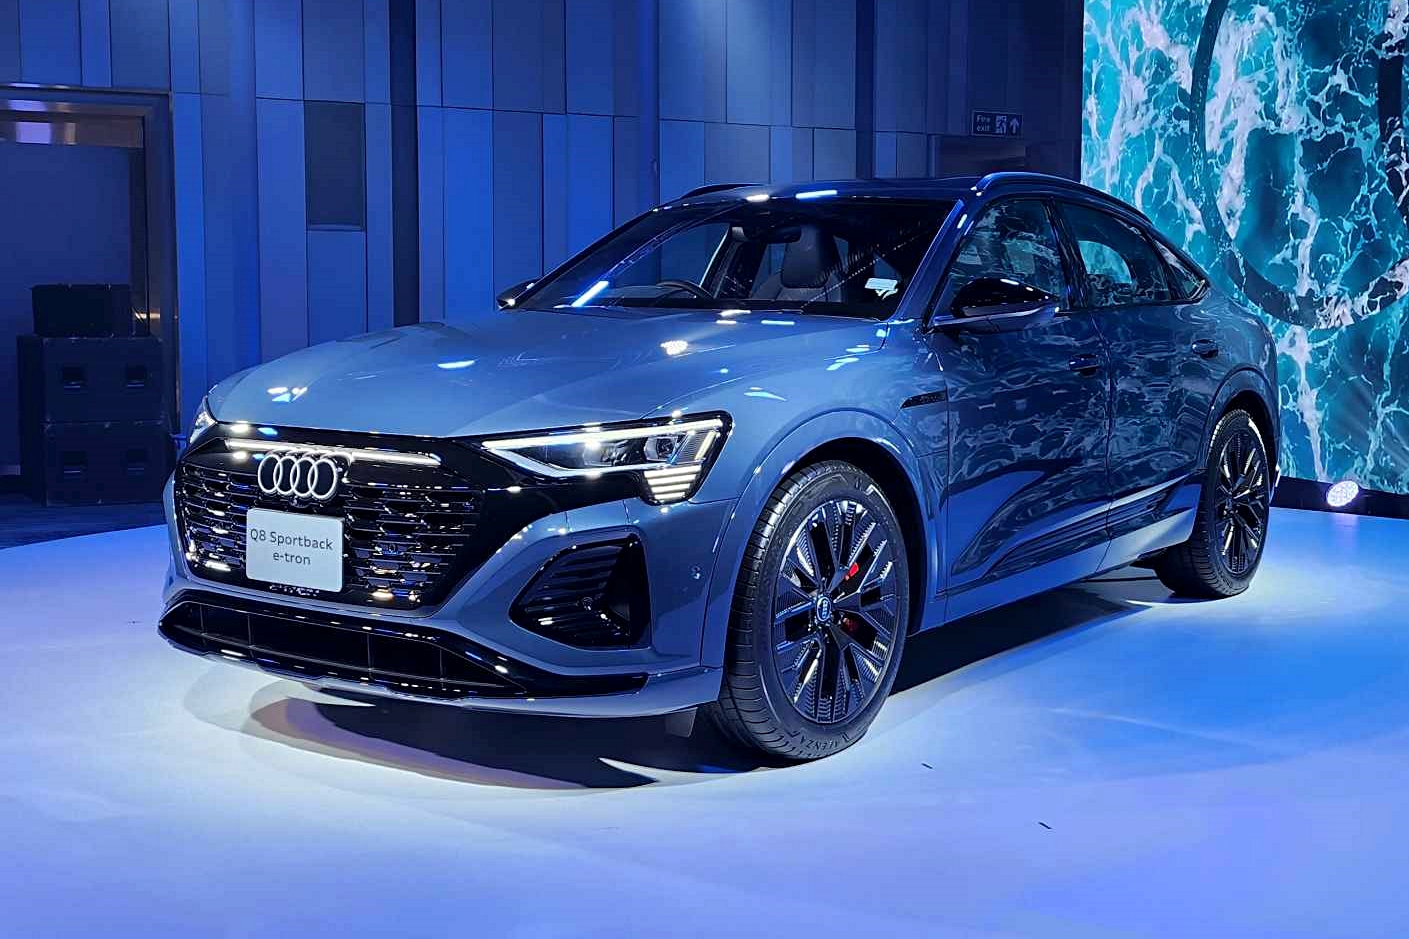 Audi รุกรถยนต์ไฟฟ้า ! กับ Q8 e-Tron พร้อม 4 รุ่นย่อย ราคา 4,699,000-5,799,000 บาท